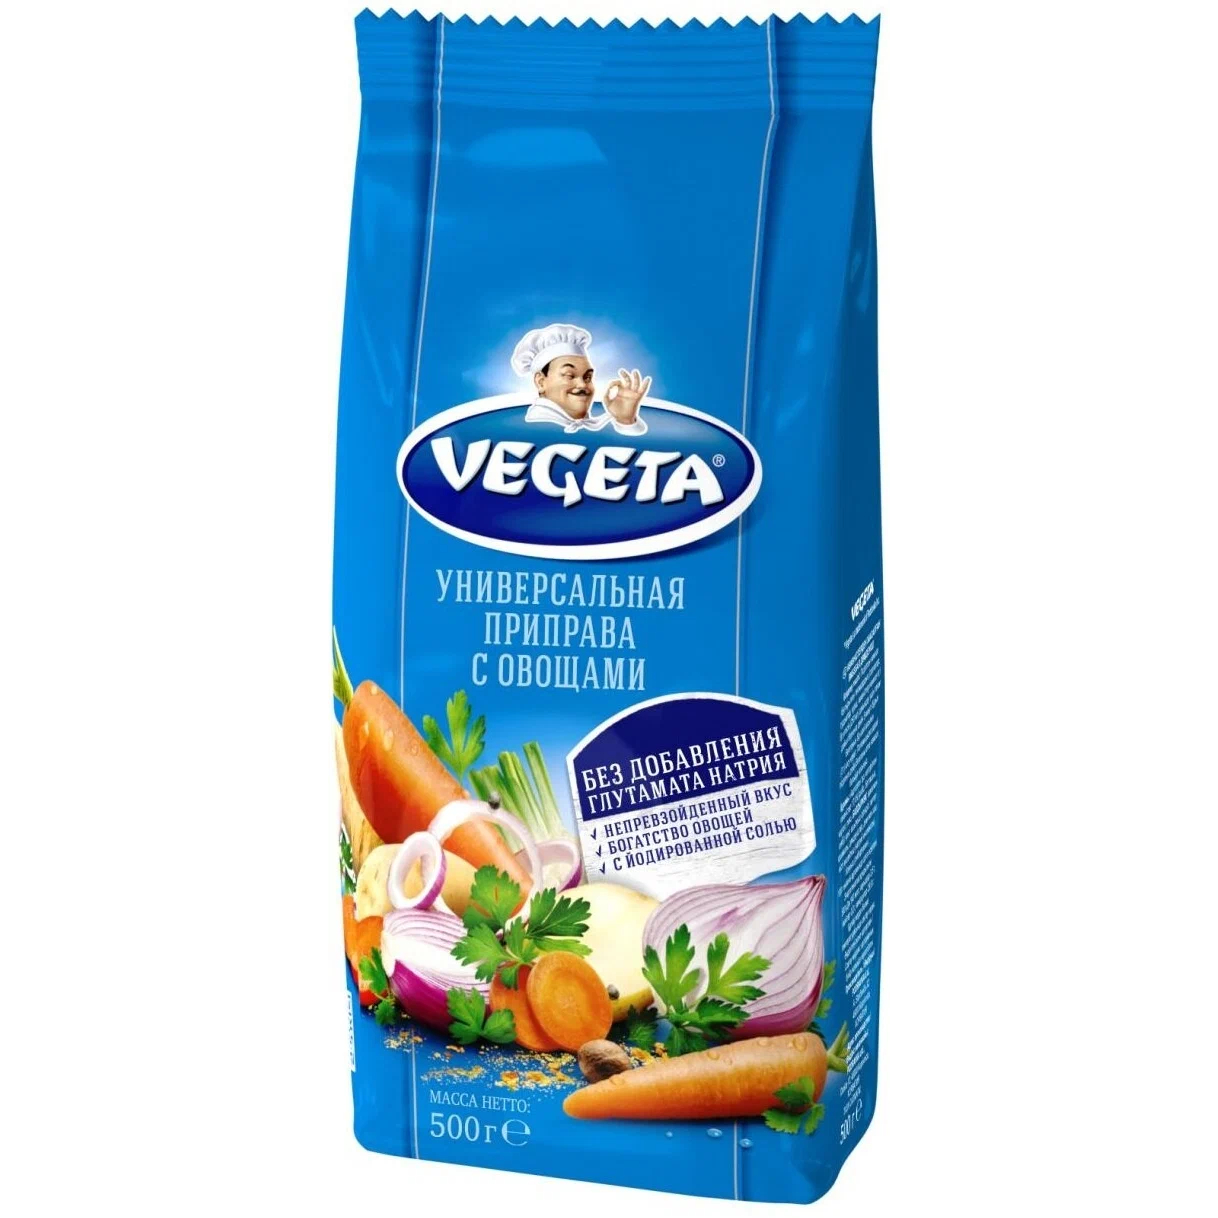 Приправа универсальная Vegeta с овощами 500 г томаты vegeta протертые 500 г